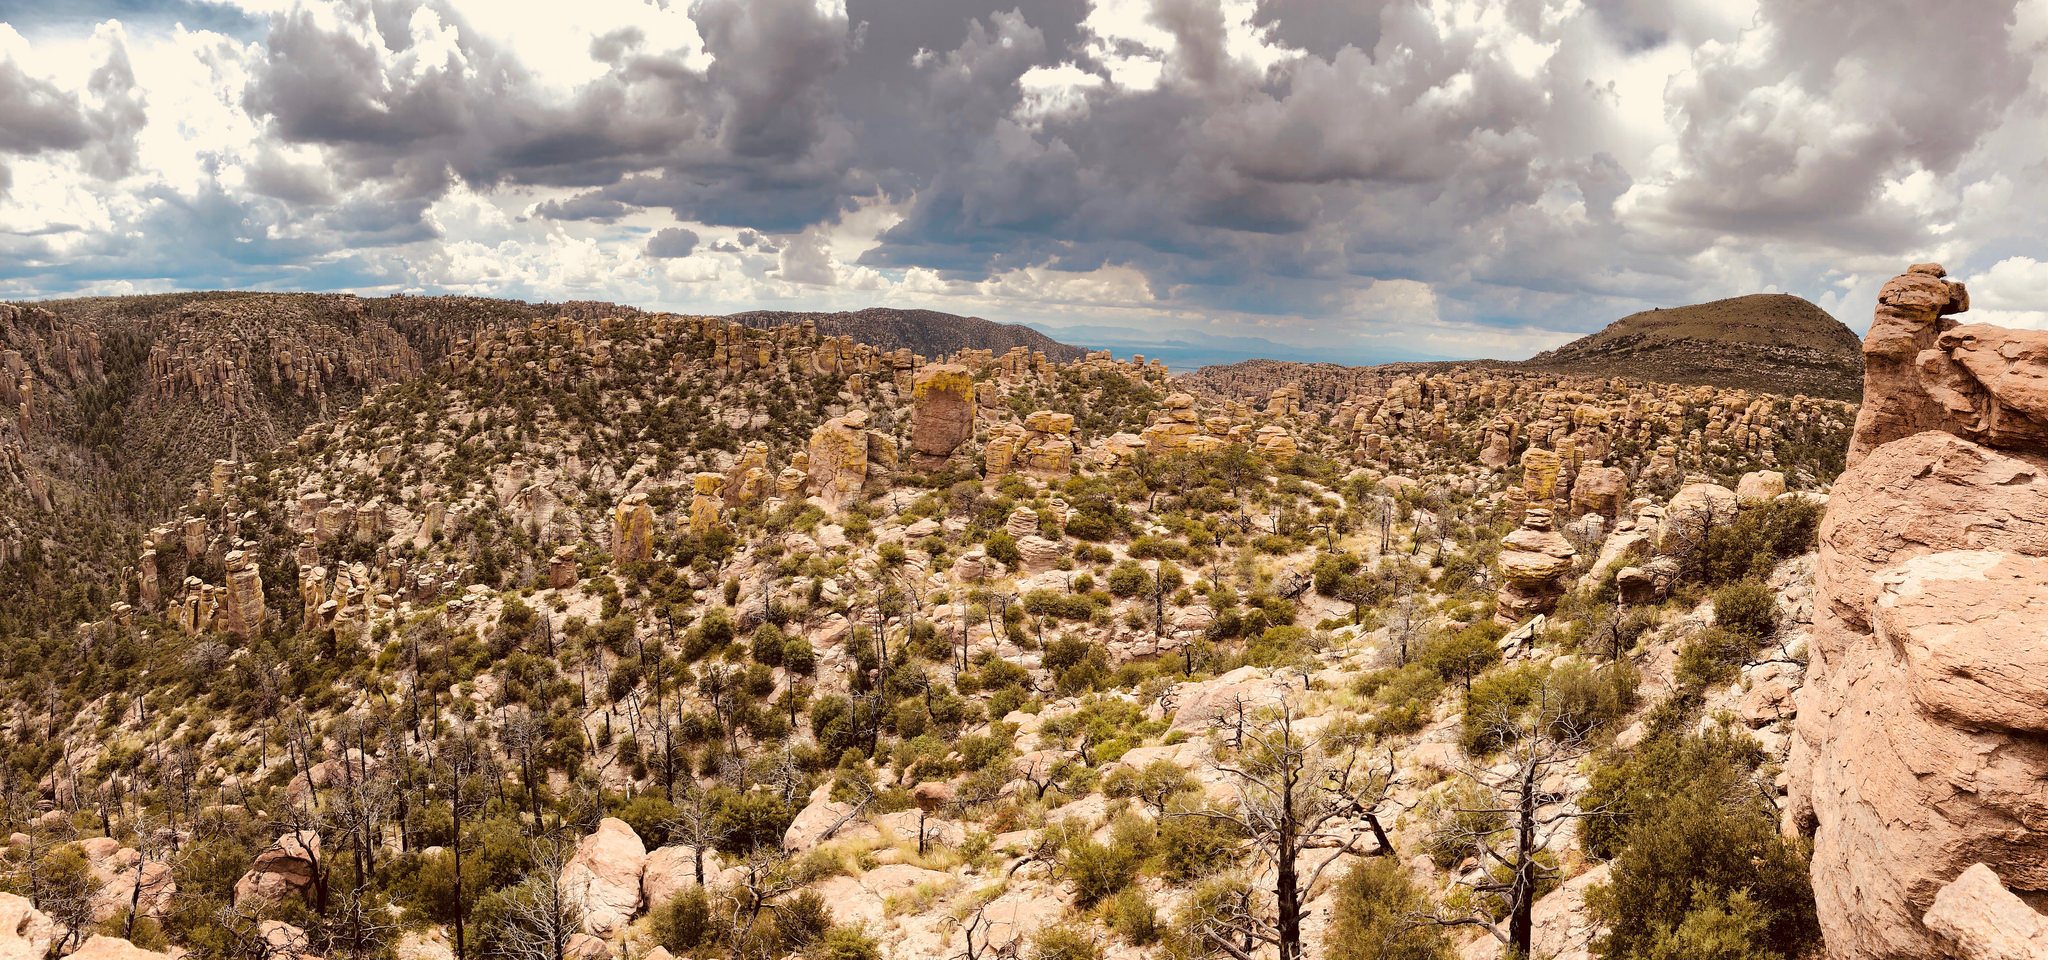 Chiricahua National Monument: best hikes in Arizona